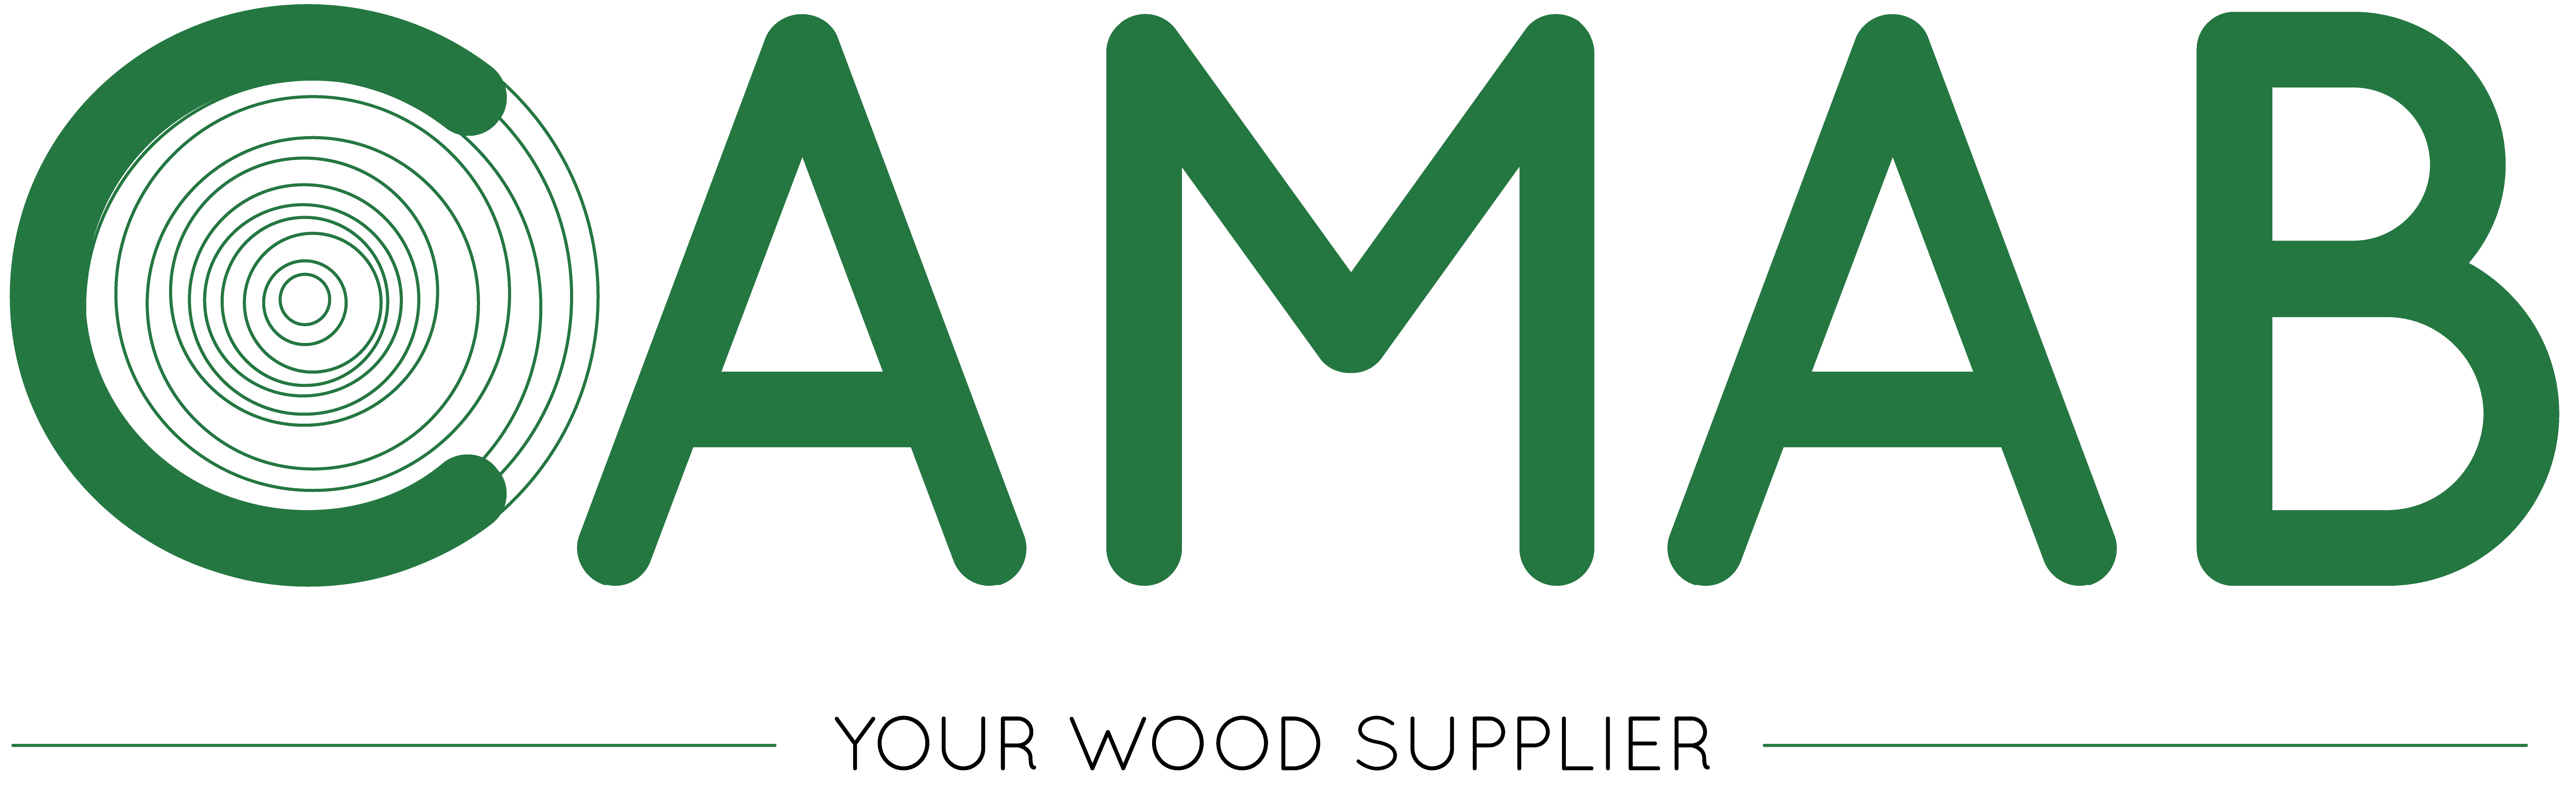 CAMAB™ (Campanello & Co AB)